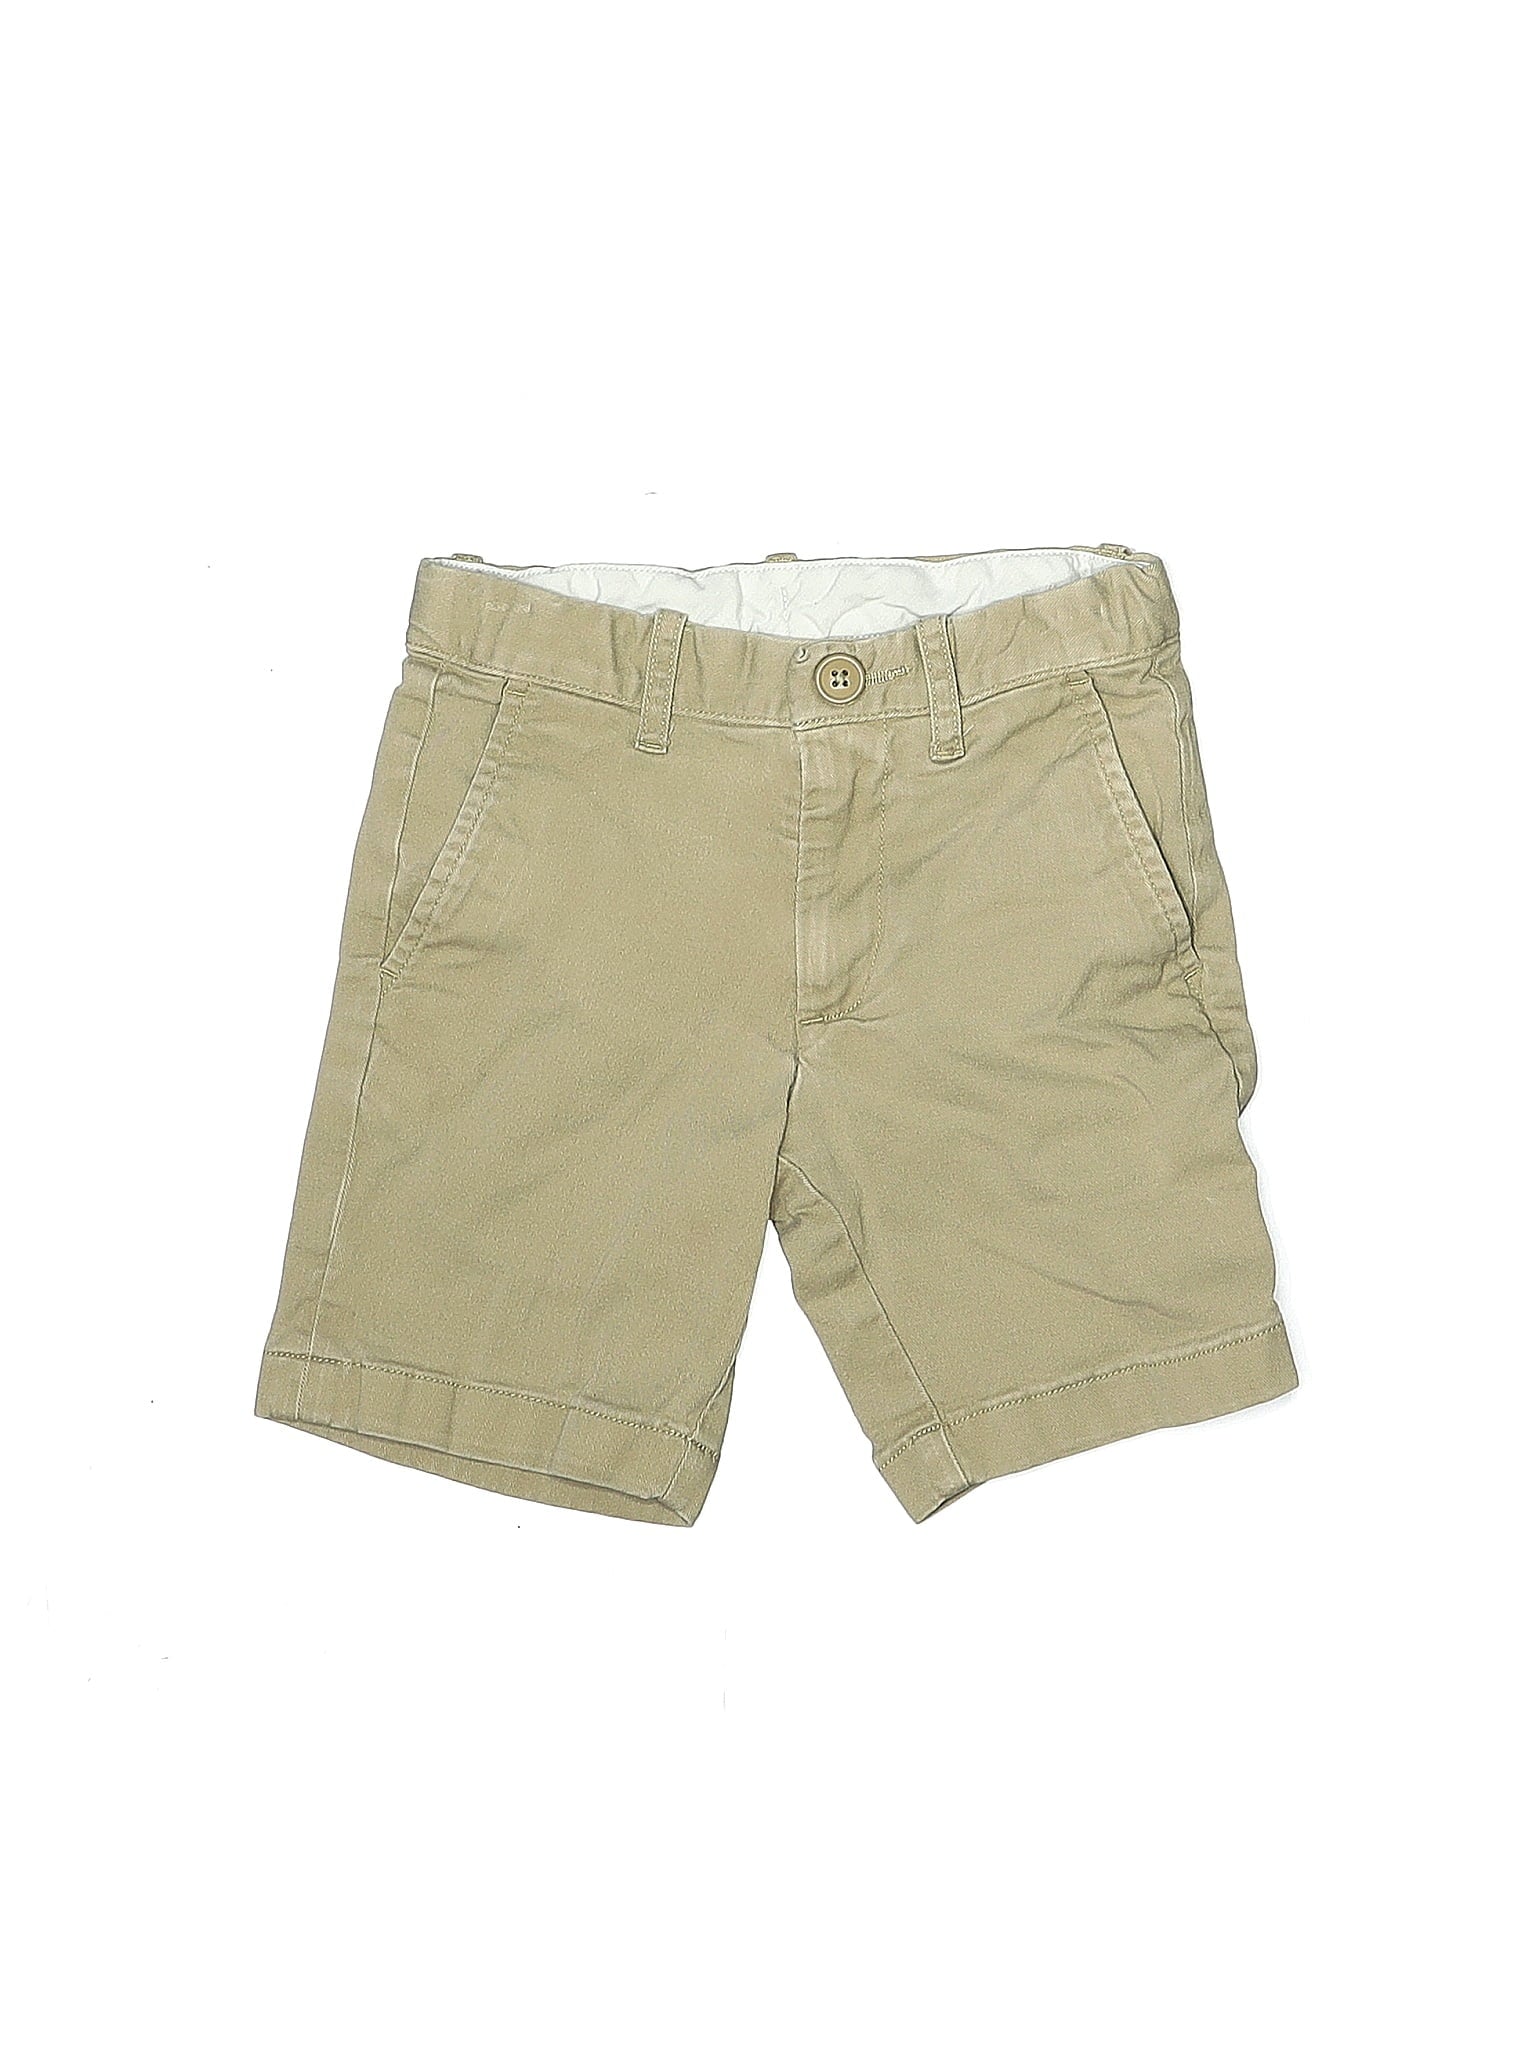 Khaki Shorts size - 5